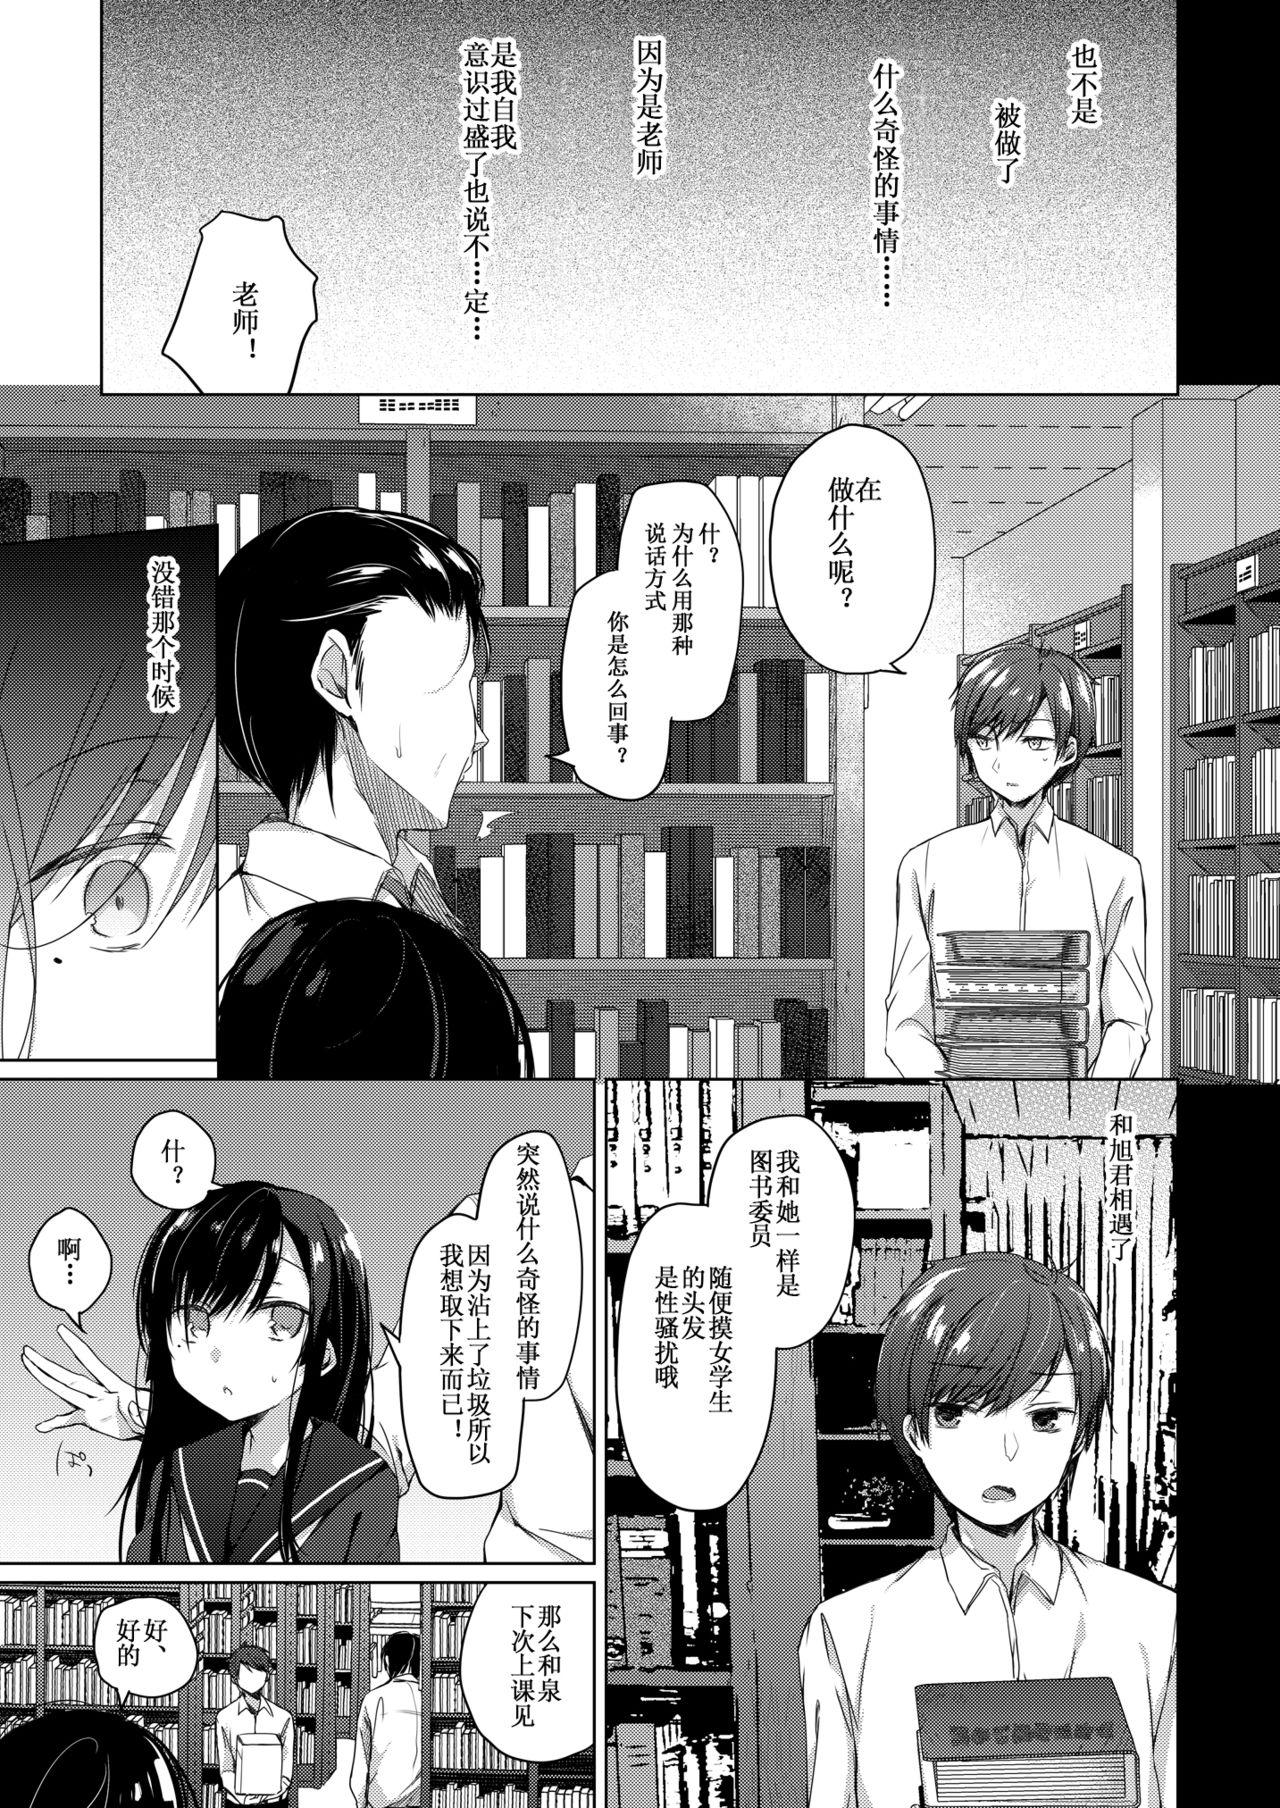 Threesome Ero Doujin Sakka no Boku no Kanojo wa Uwaki nante Shinai. 2 - She will never let me down. - Original Boquete - Page 8